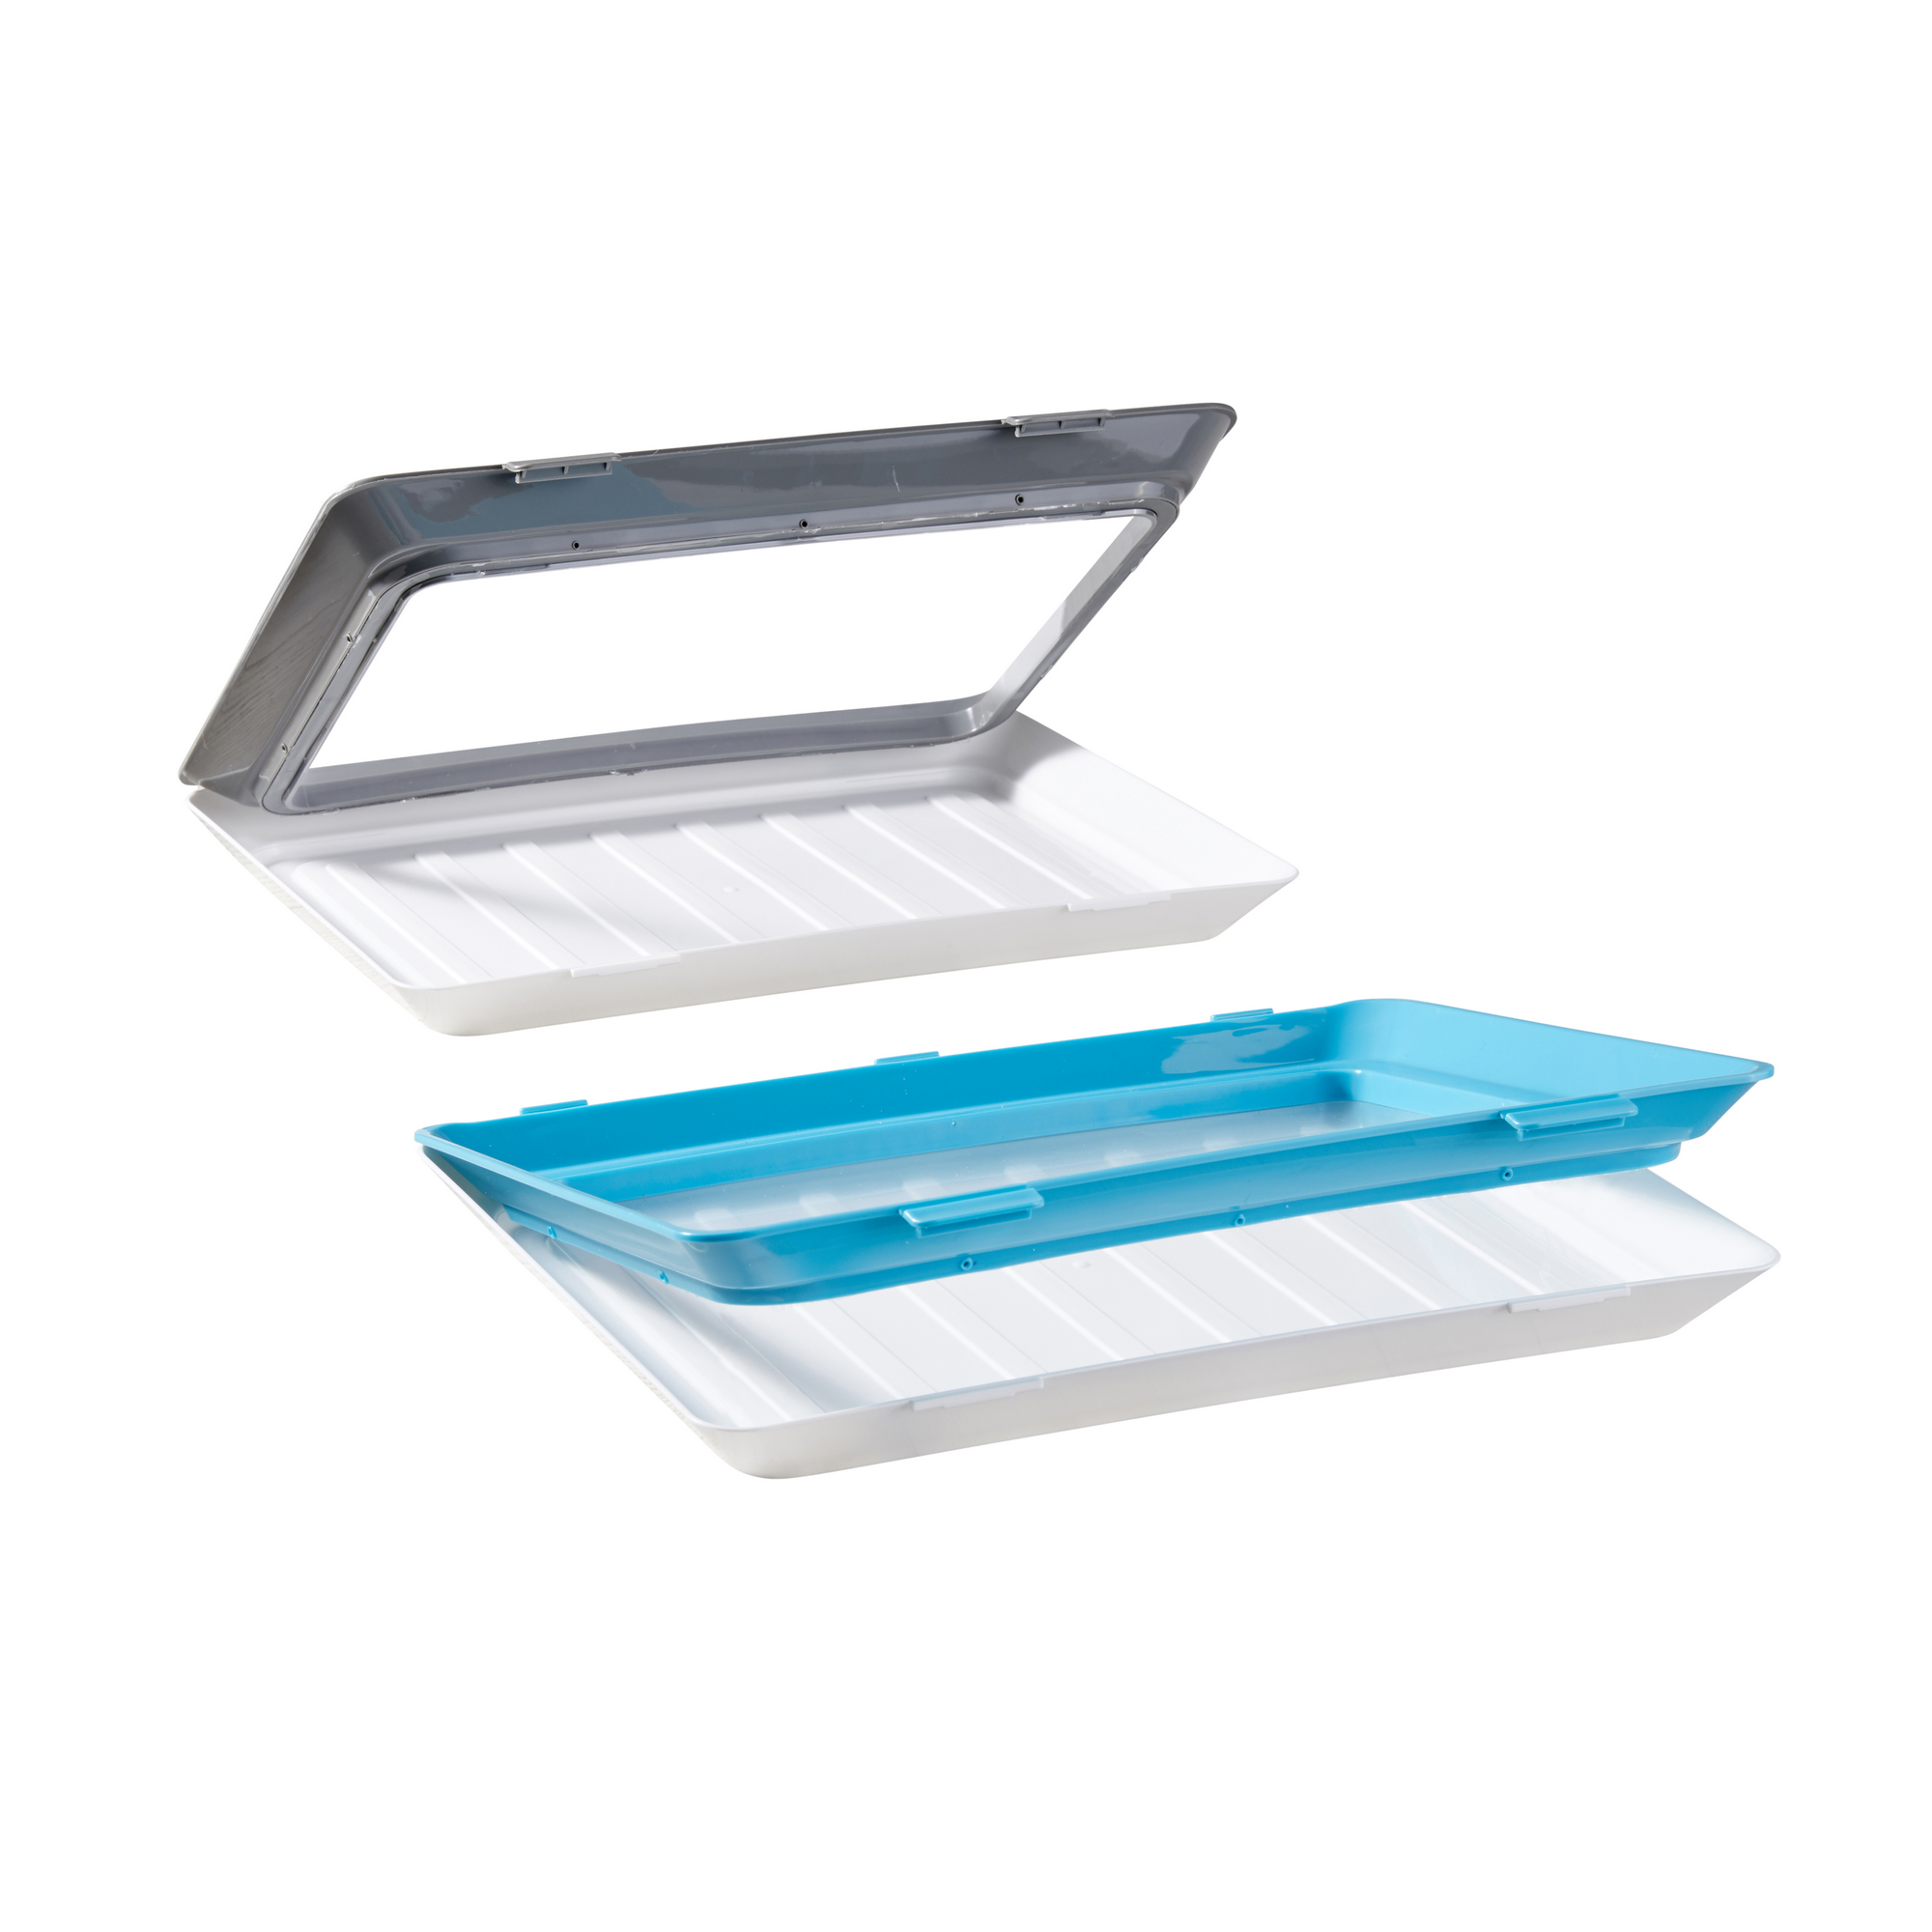 Frischhalteboxen-Set 'Fresh & Clik'  235 x 315 x 50 mm, blau/grau, 2-teilig + product picture